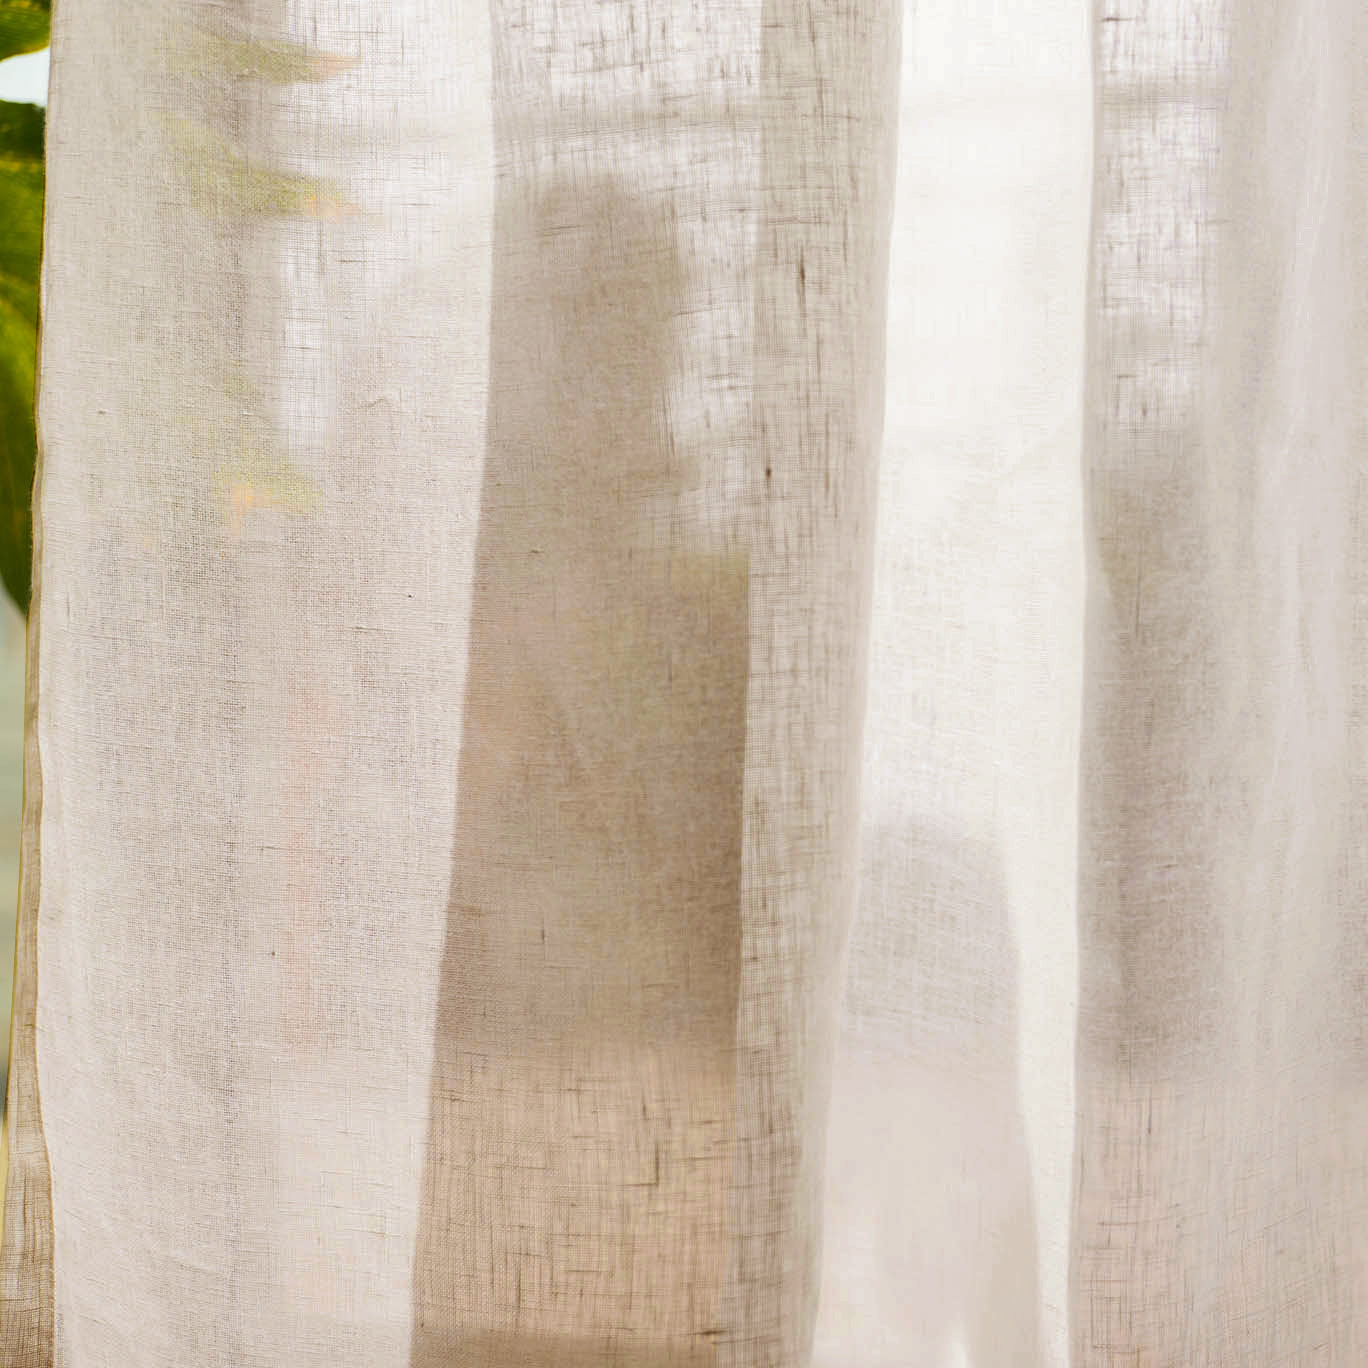 ANTWERP - 100% Belgian Linen Sheer Curtains - FlaxAntwerp collection, featuring 100% Belgian linen, woven in one of the six Belgium Linen factory in Belgium with 150 years of linen weaving history.Material: 100% BelDecorPassionsANTWERP - 100% Belgian Linen Sheer Curtains - Flax